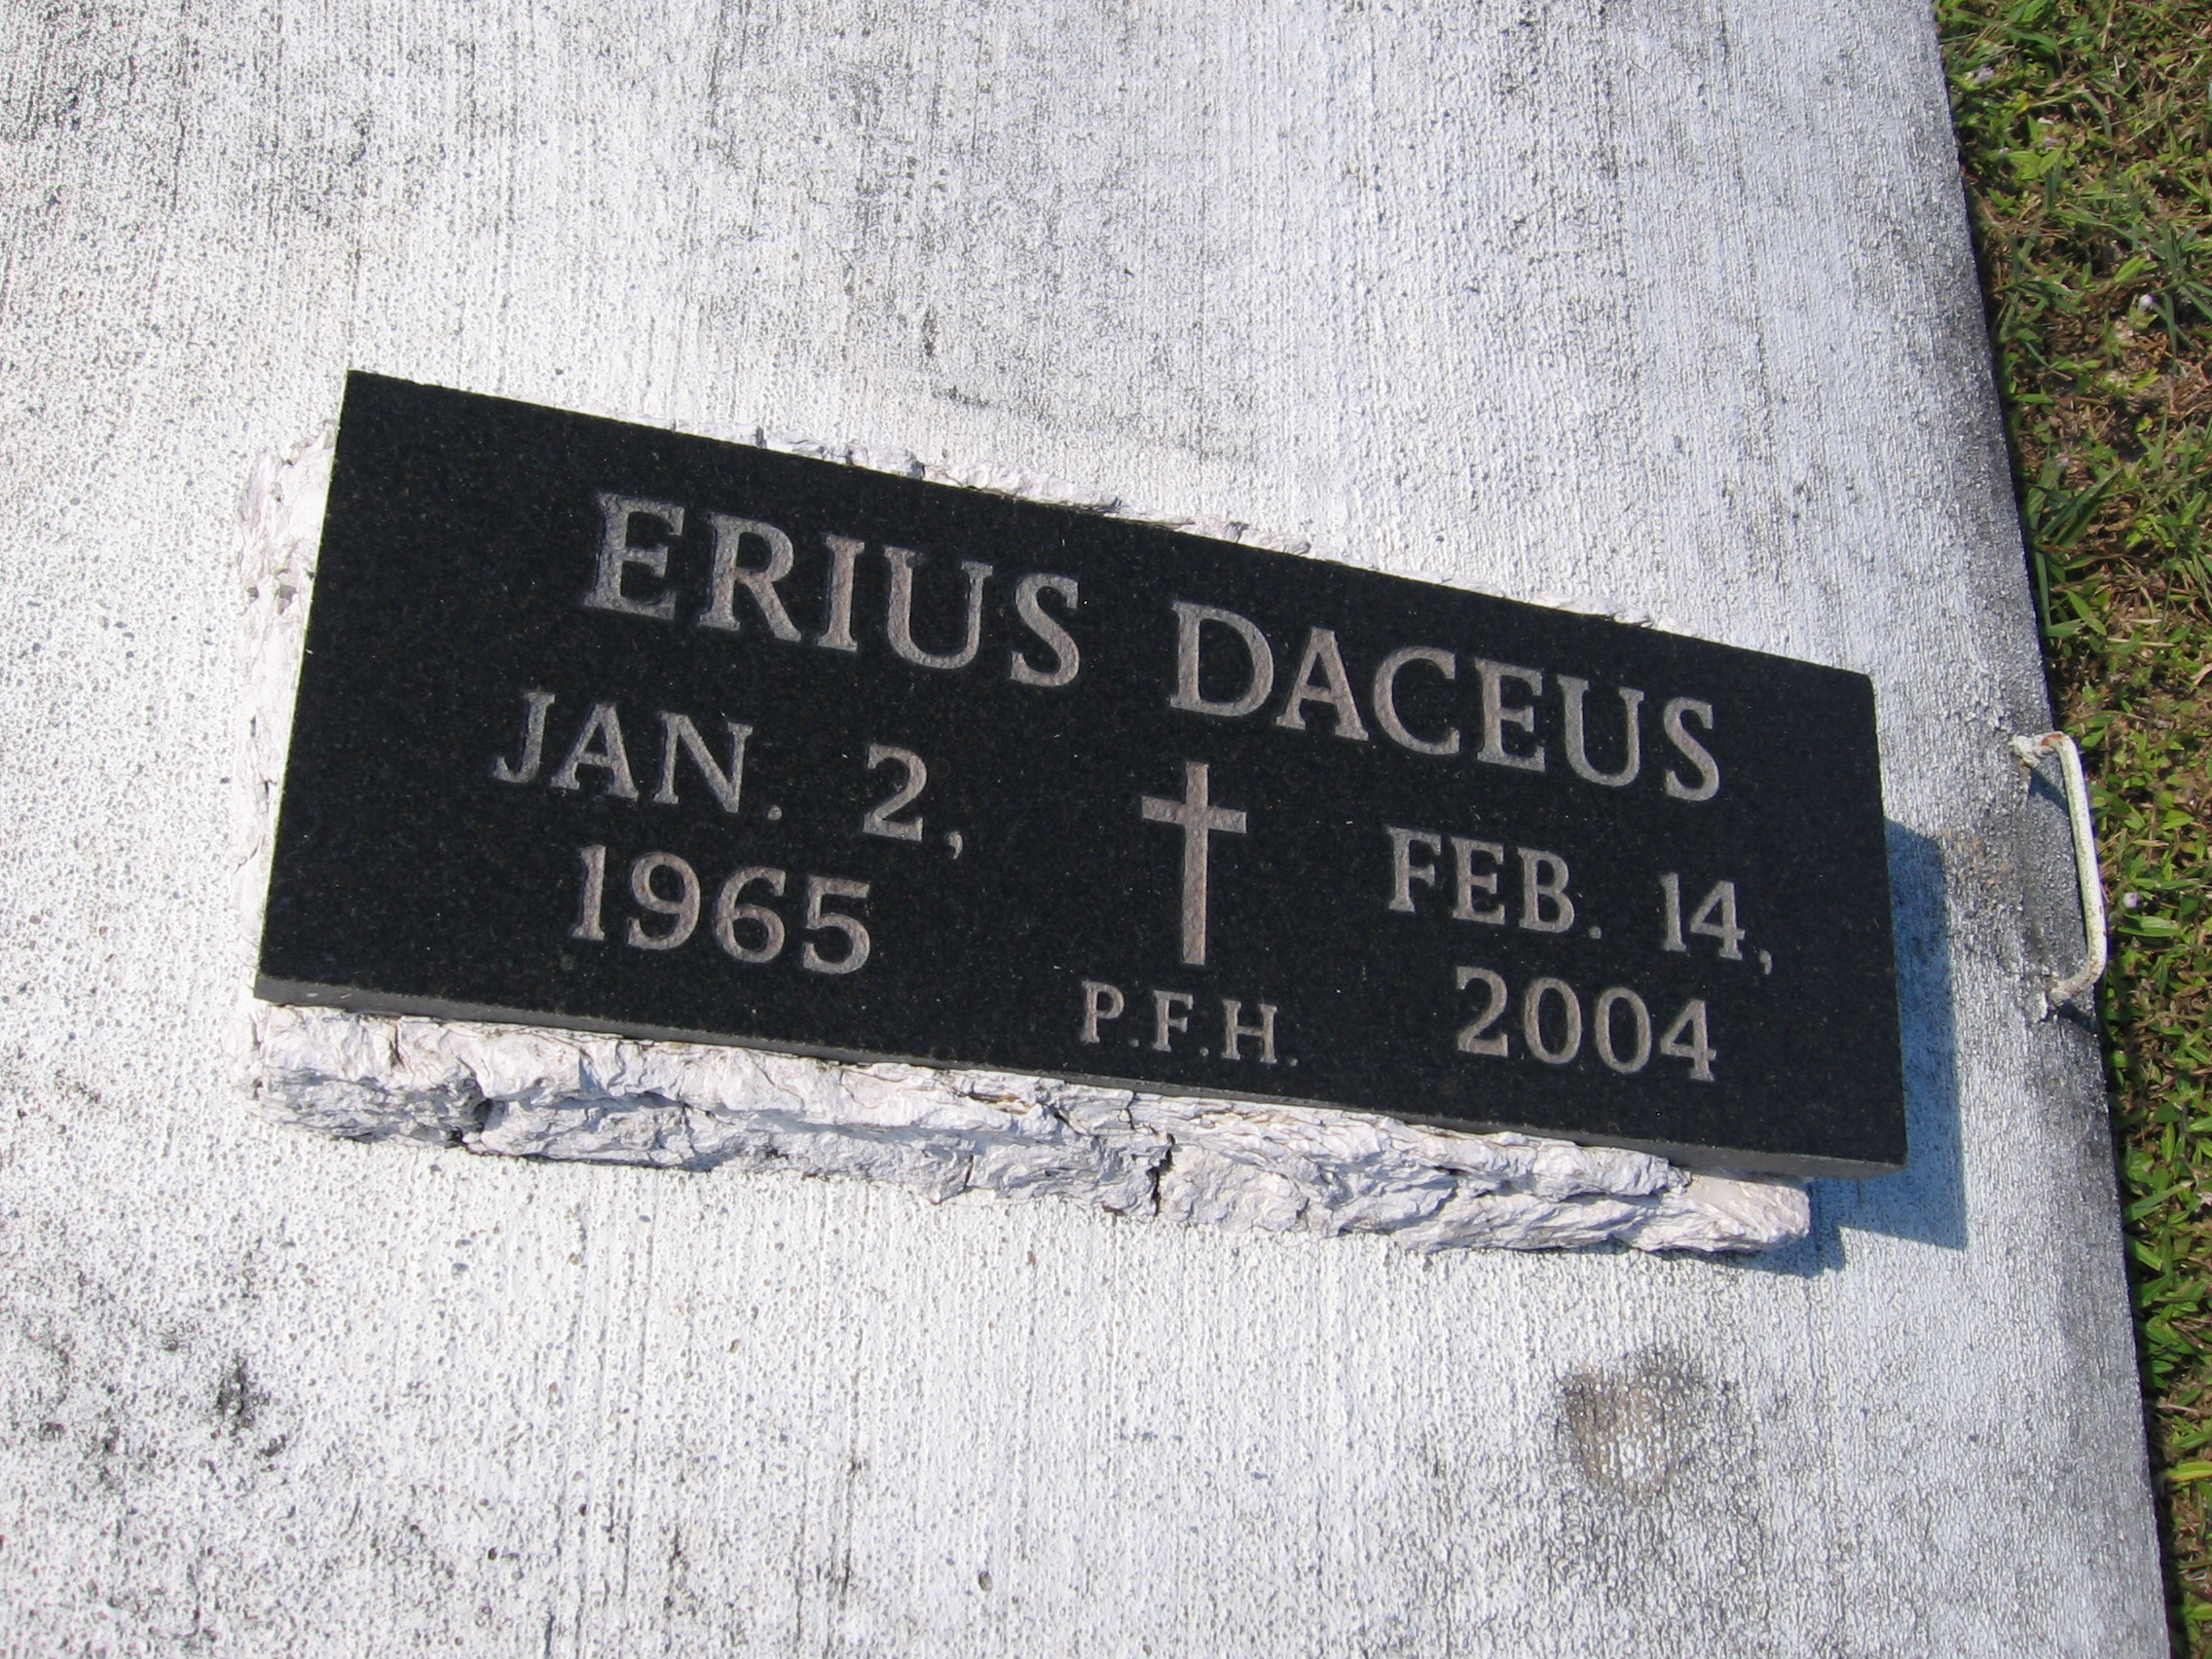 Erius Daceus